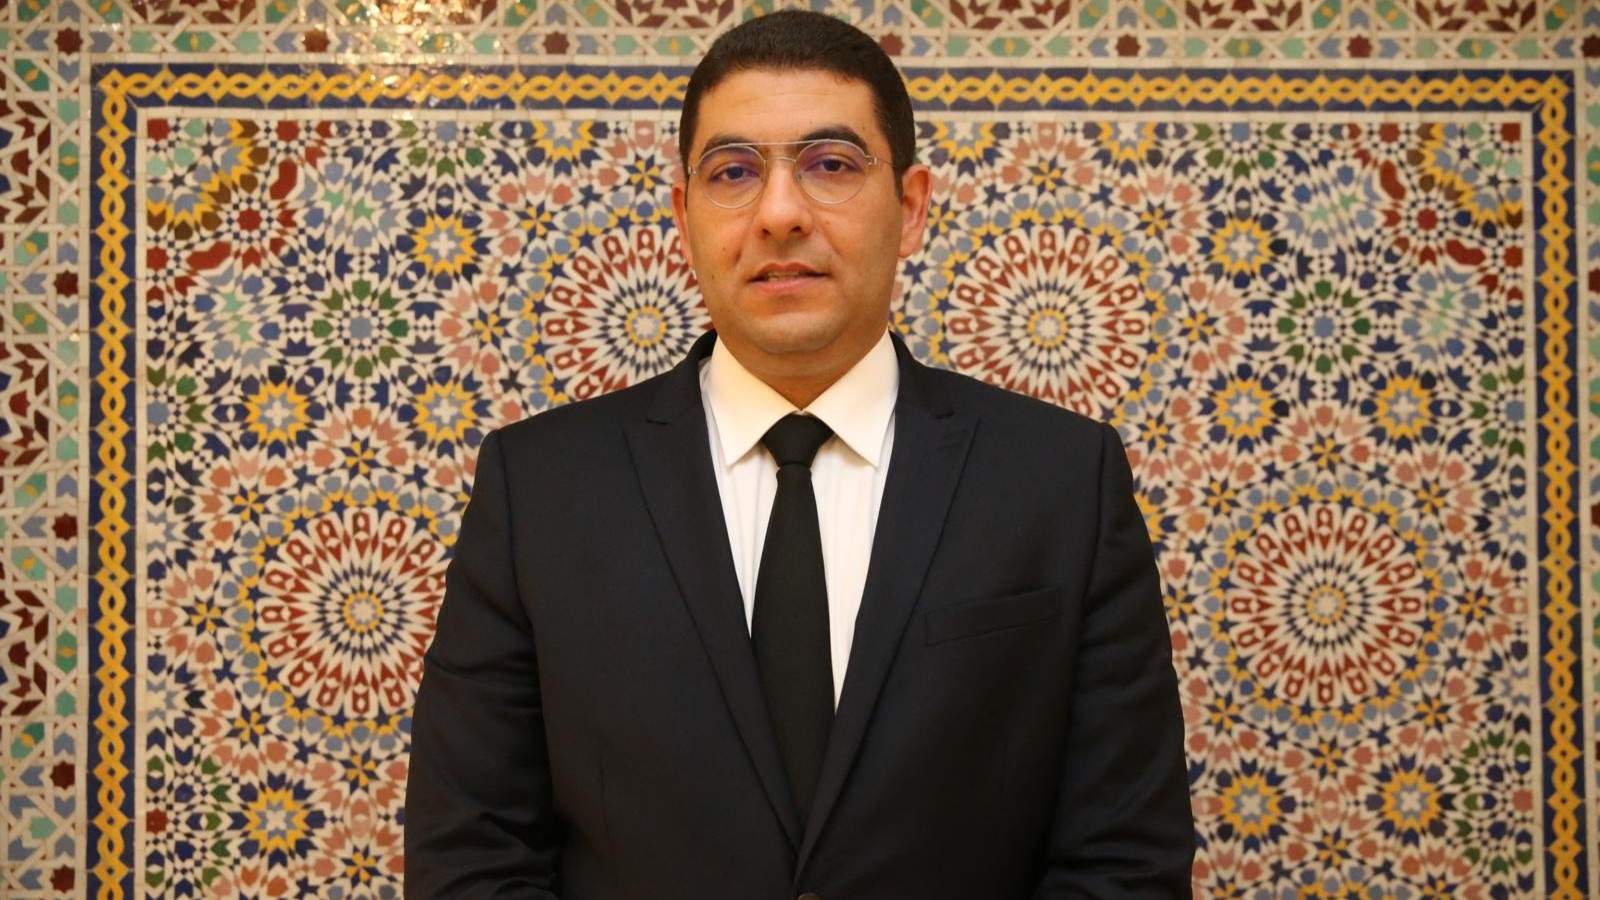 Jeunesse au monde arabe: Bensaid élu meilleure personnalité gouvernementale en matière de communication sociale